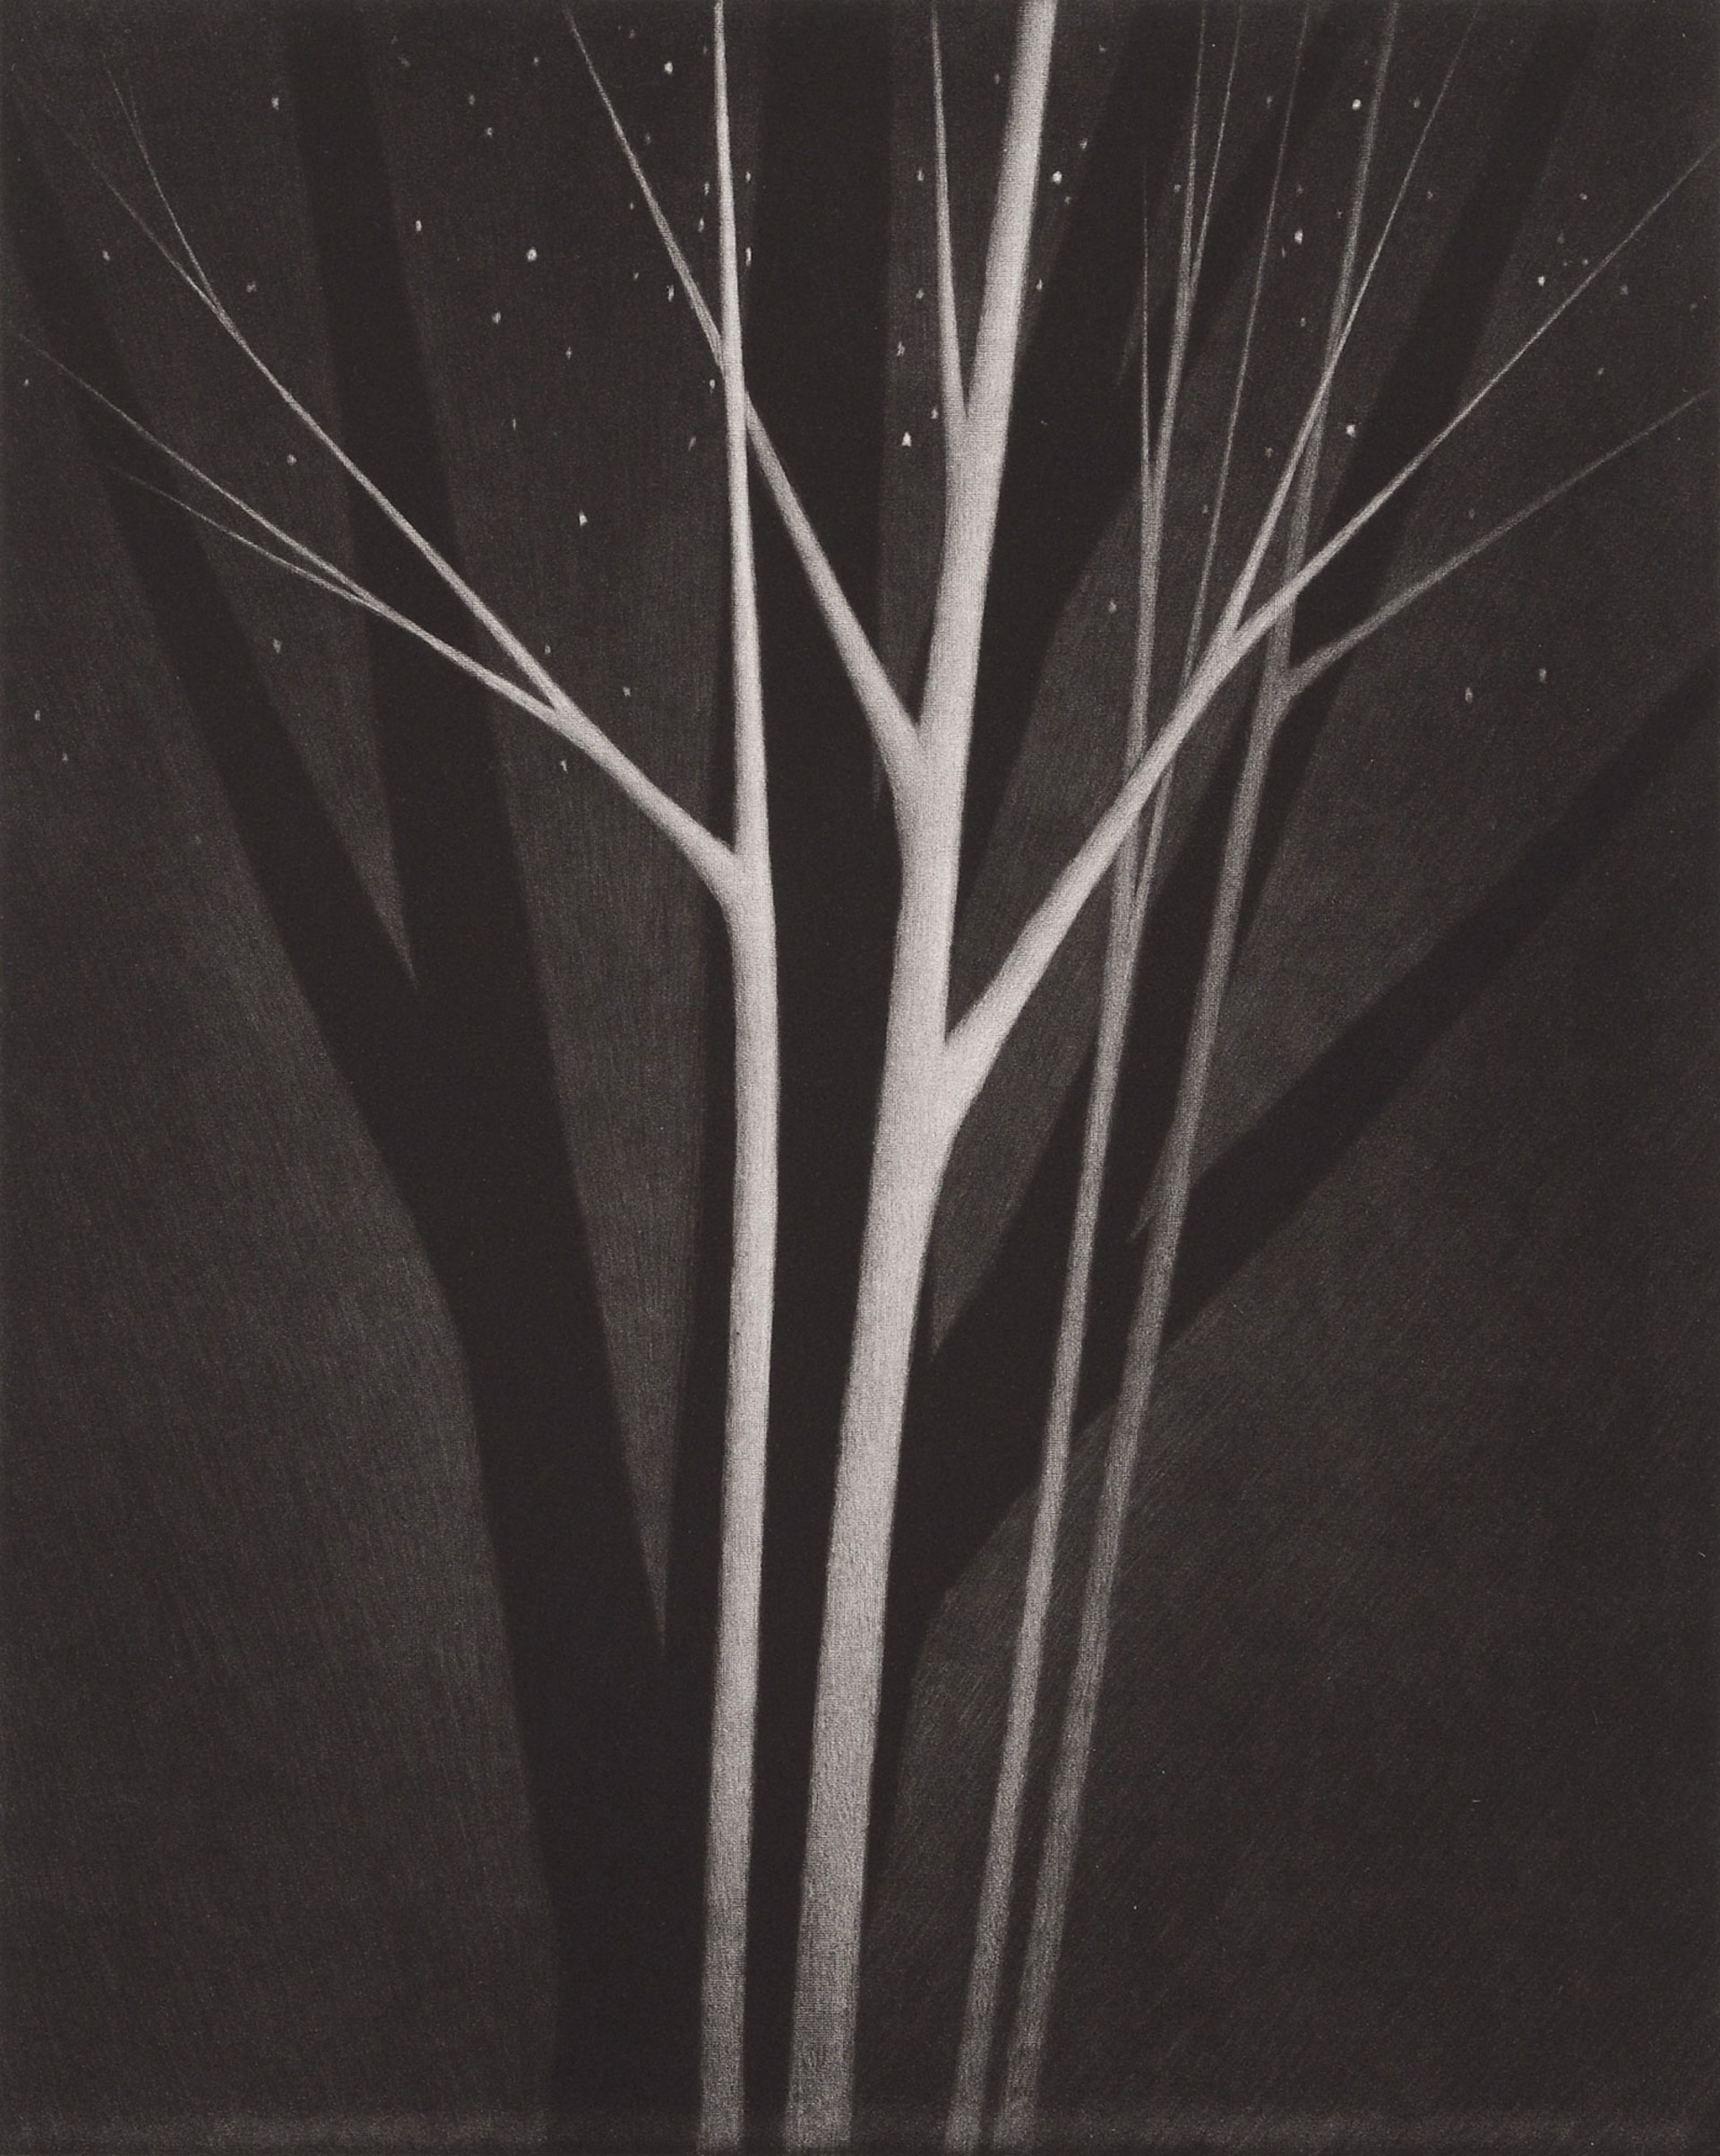 Trees & Stars by Robert Kipniss